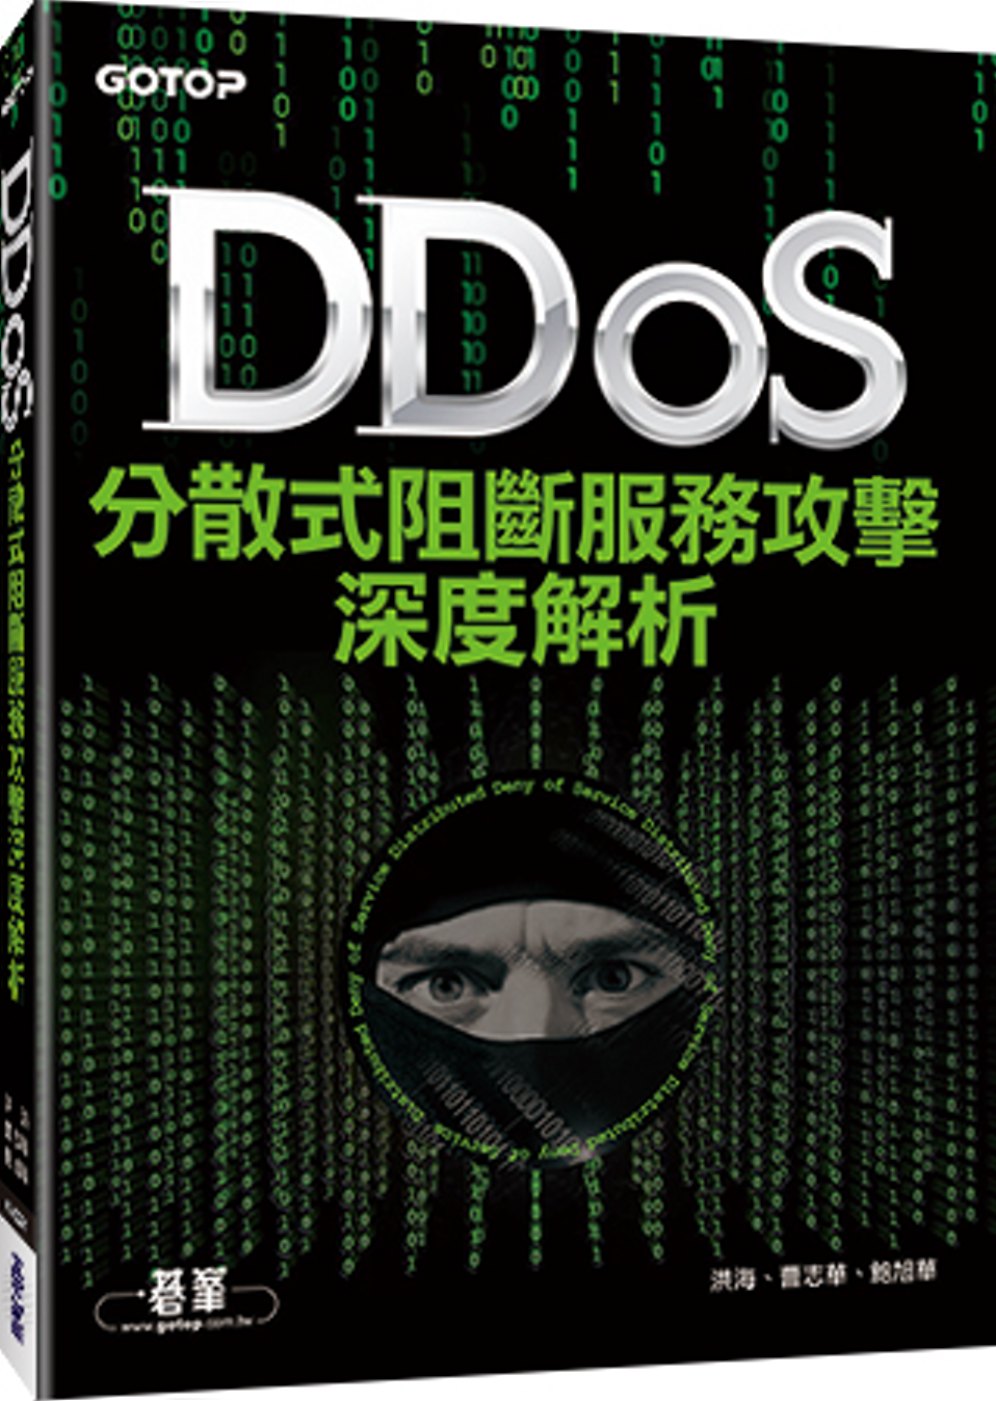 DDoS分散式阻斷服務攻擊深度解析